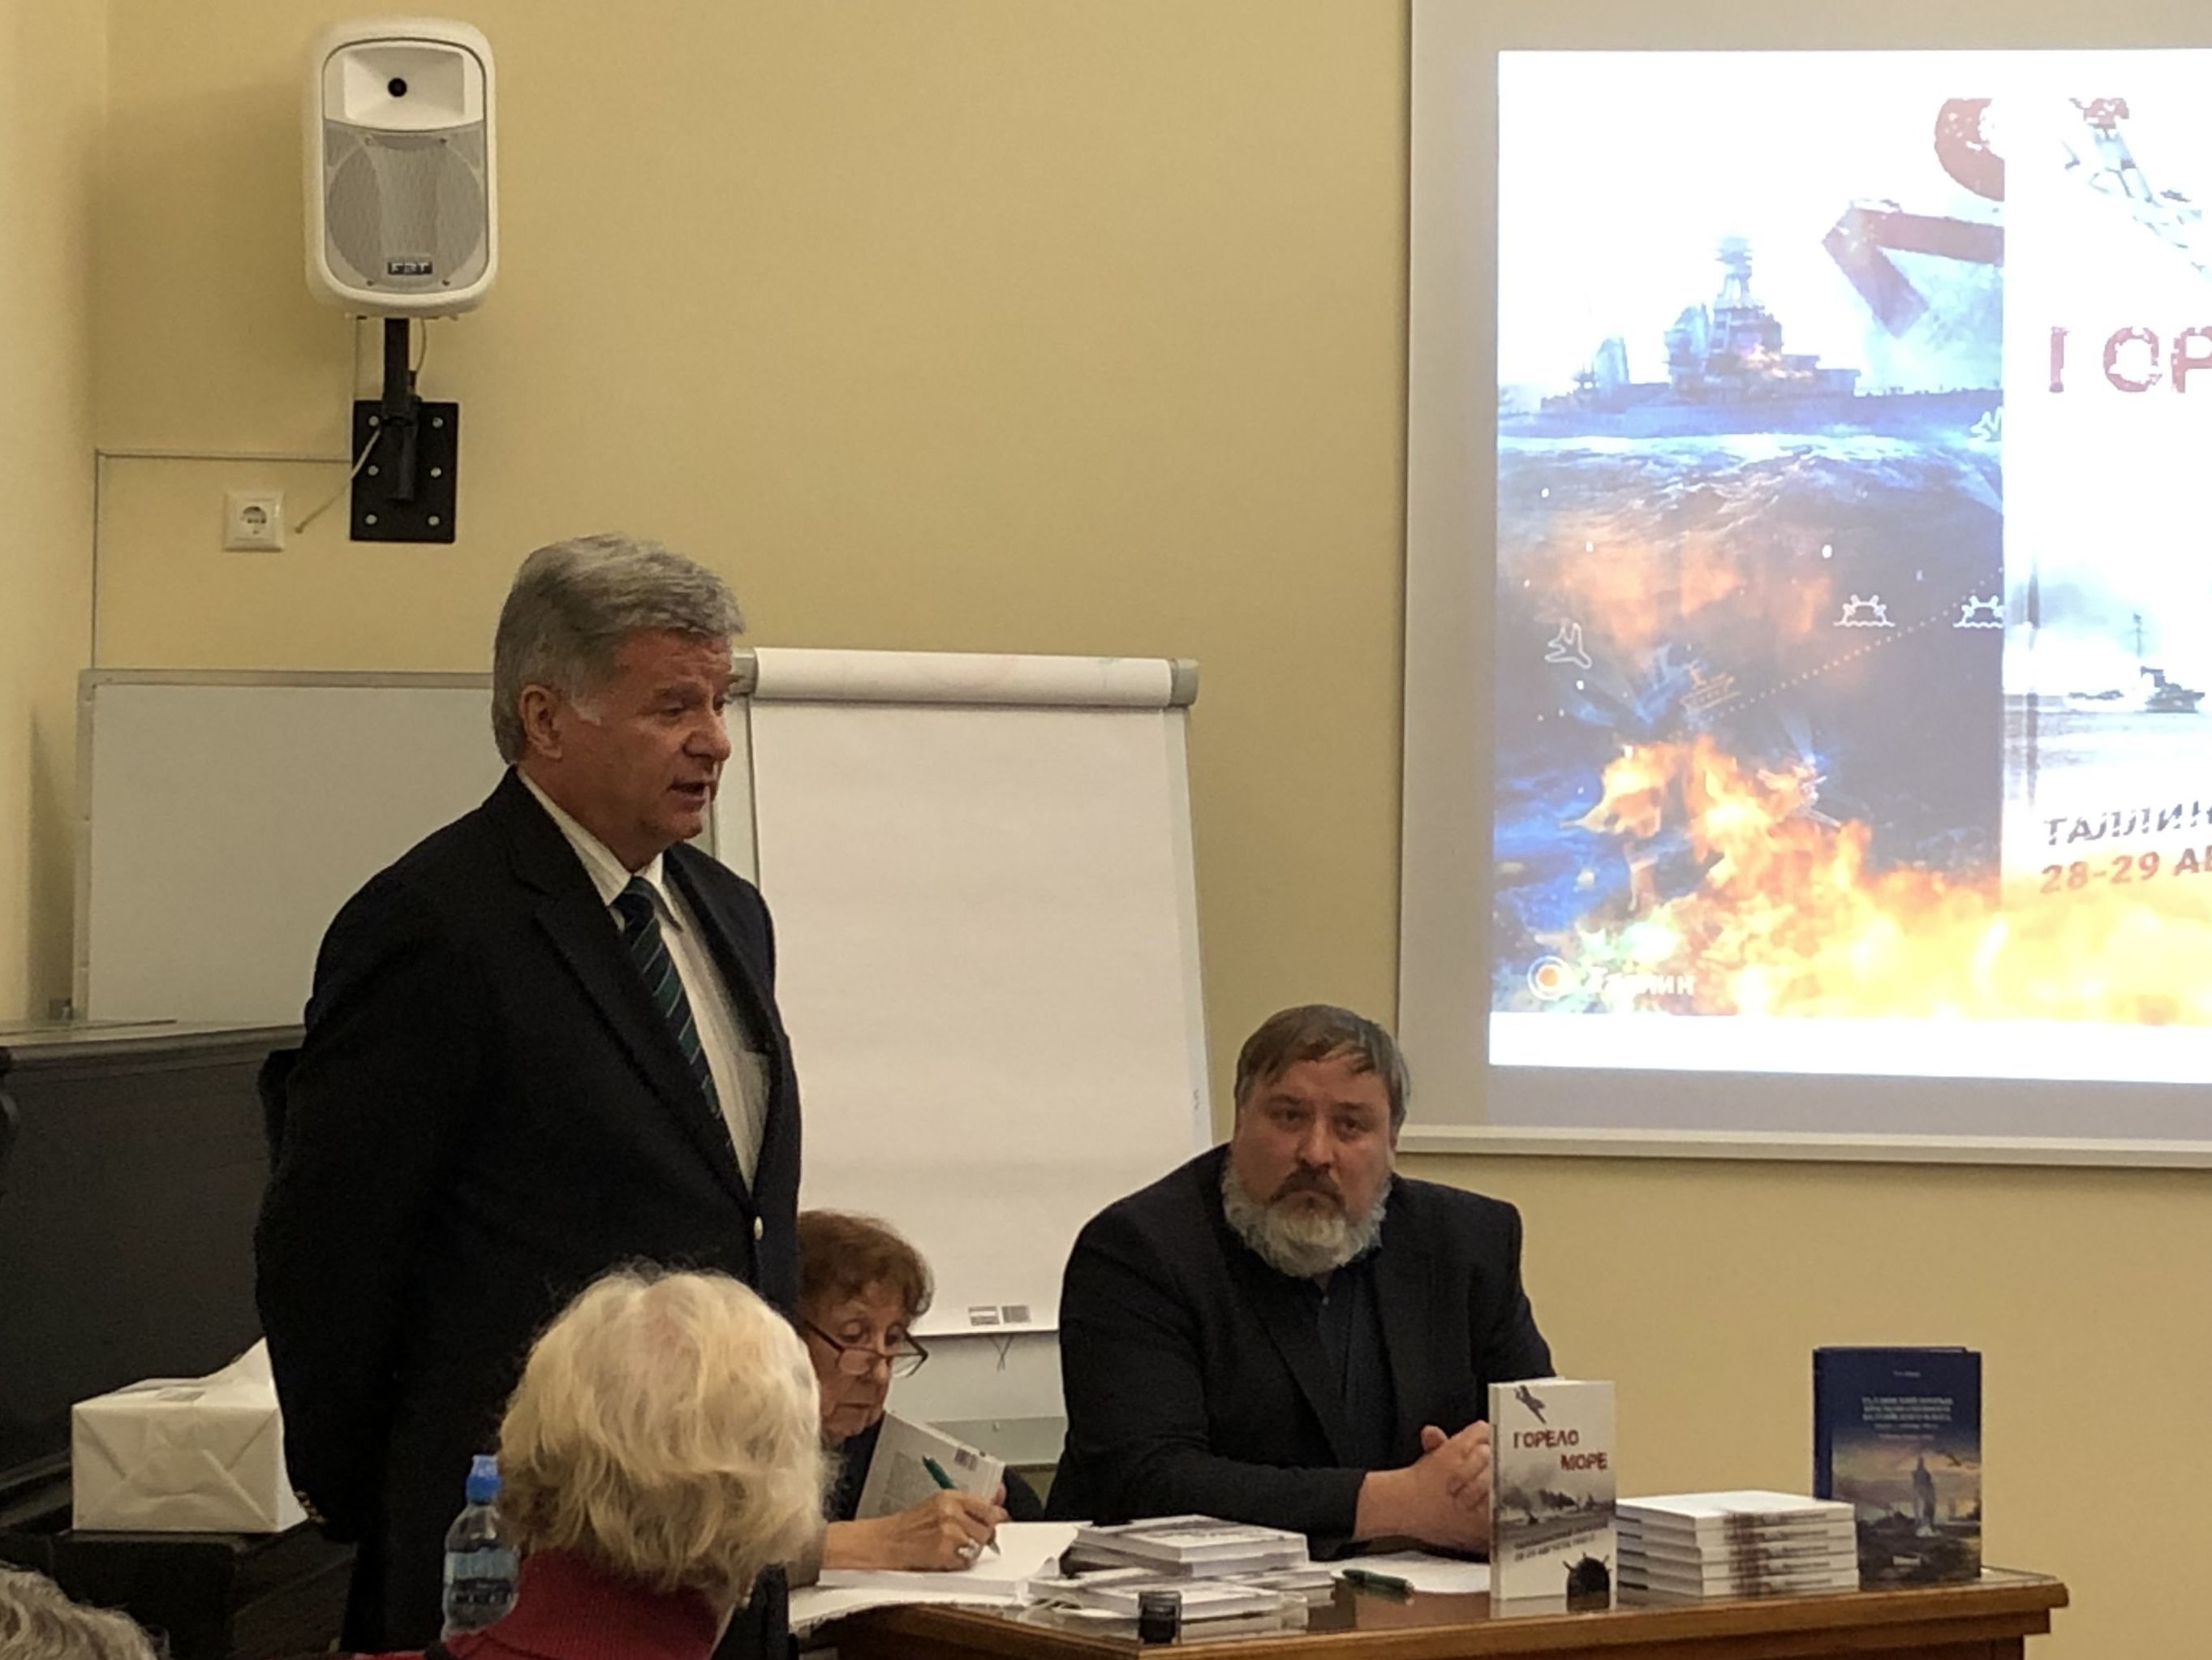 Посол России в Эстонии Александр Петров выступает на презентации книги о Таллинском переходе "Горело море"